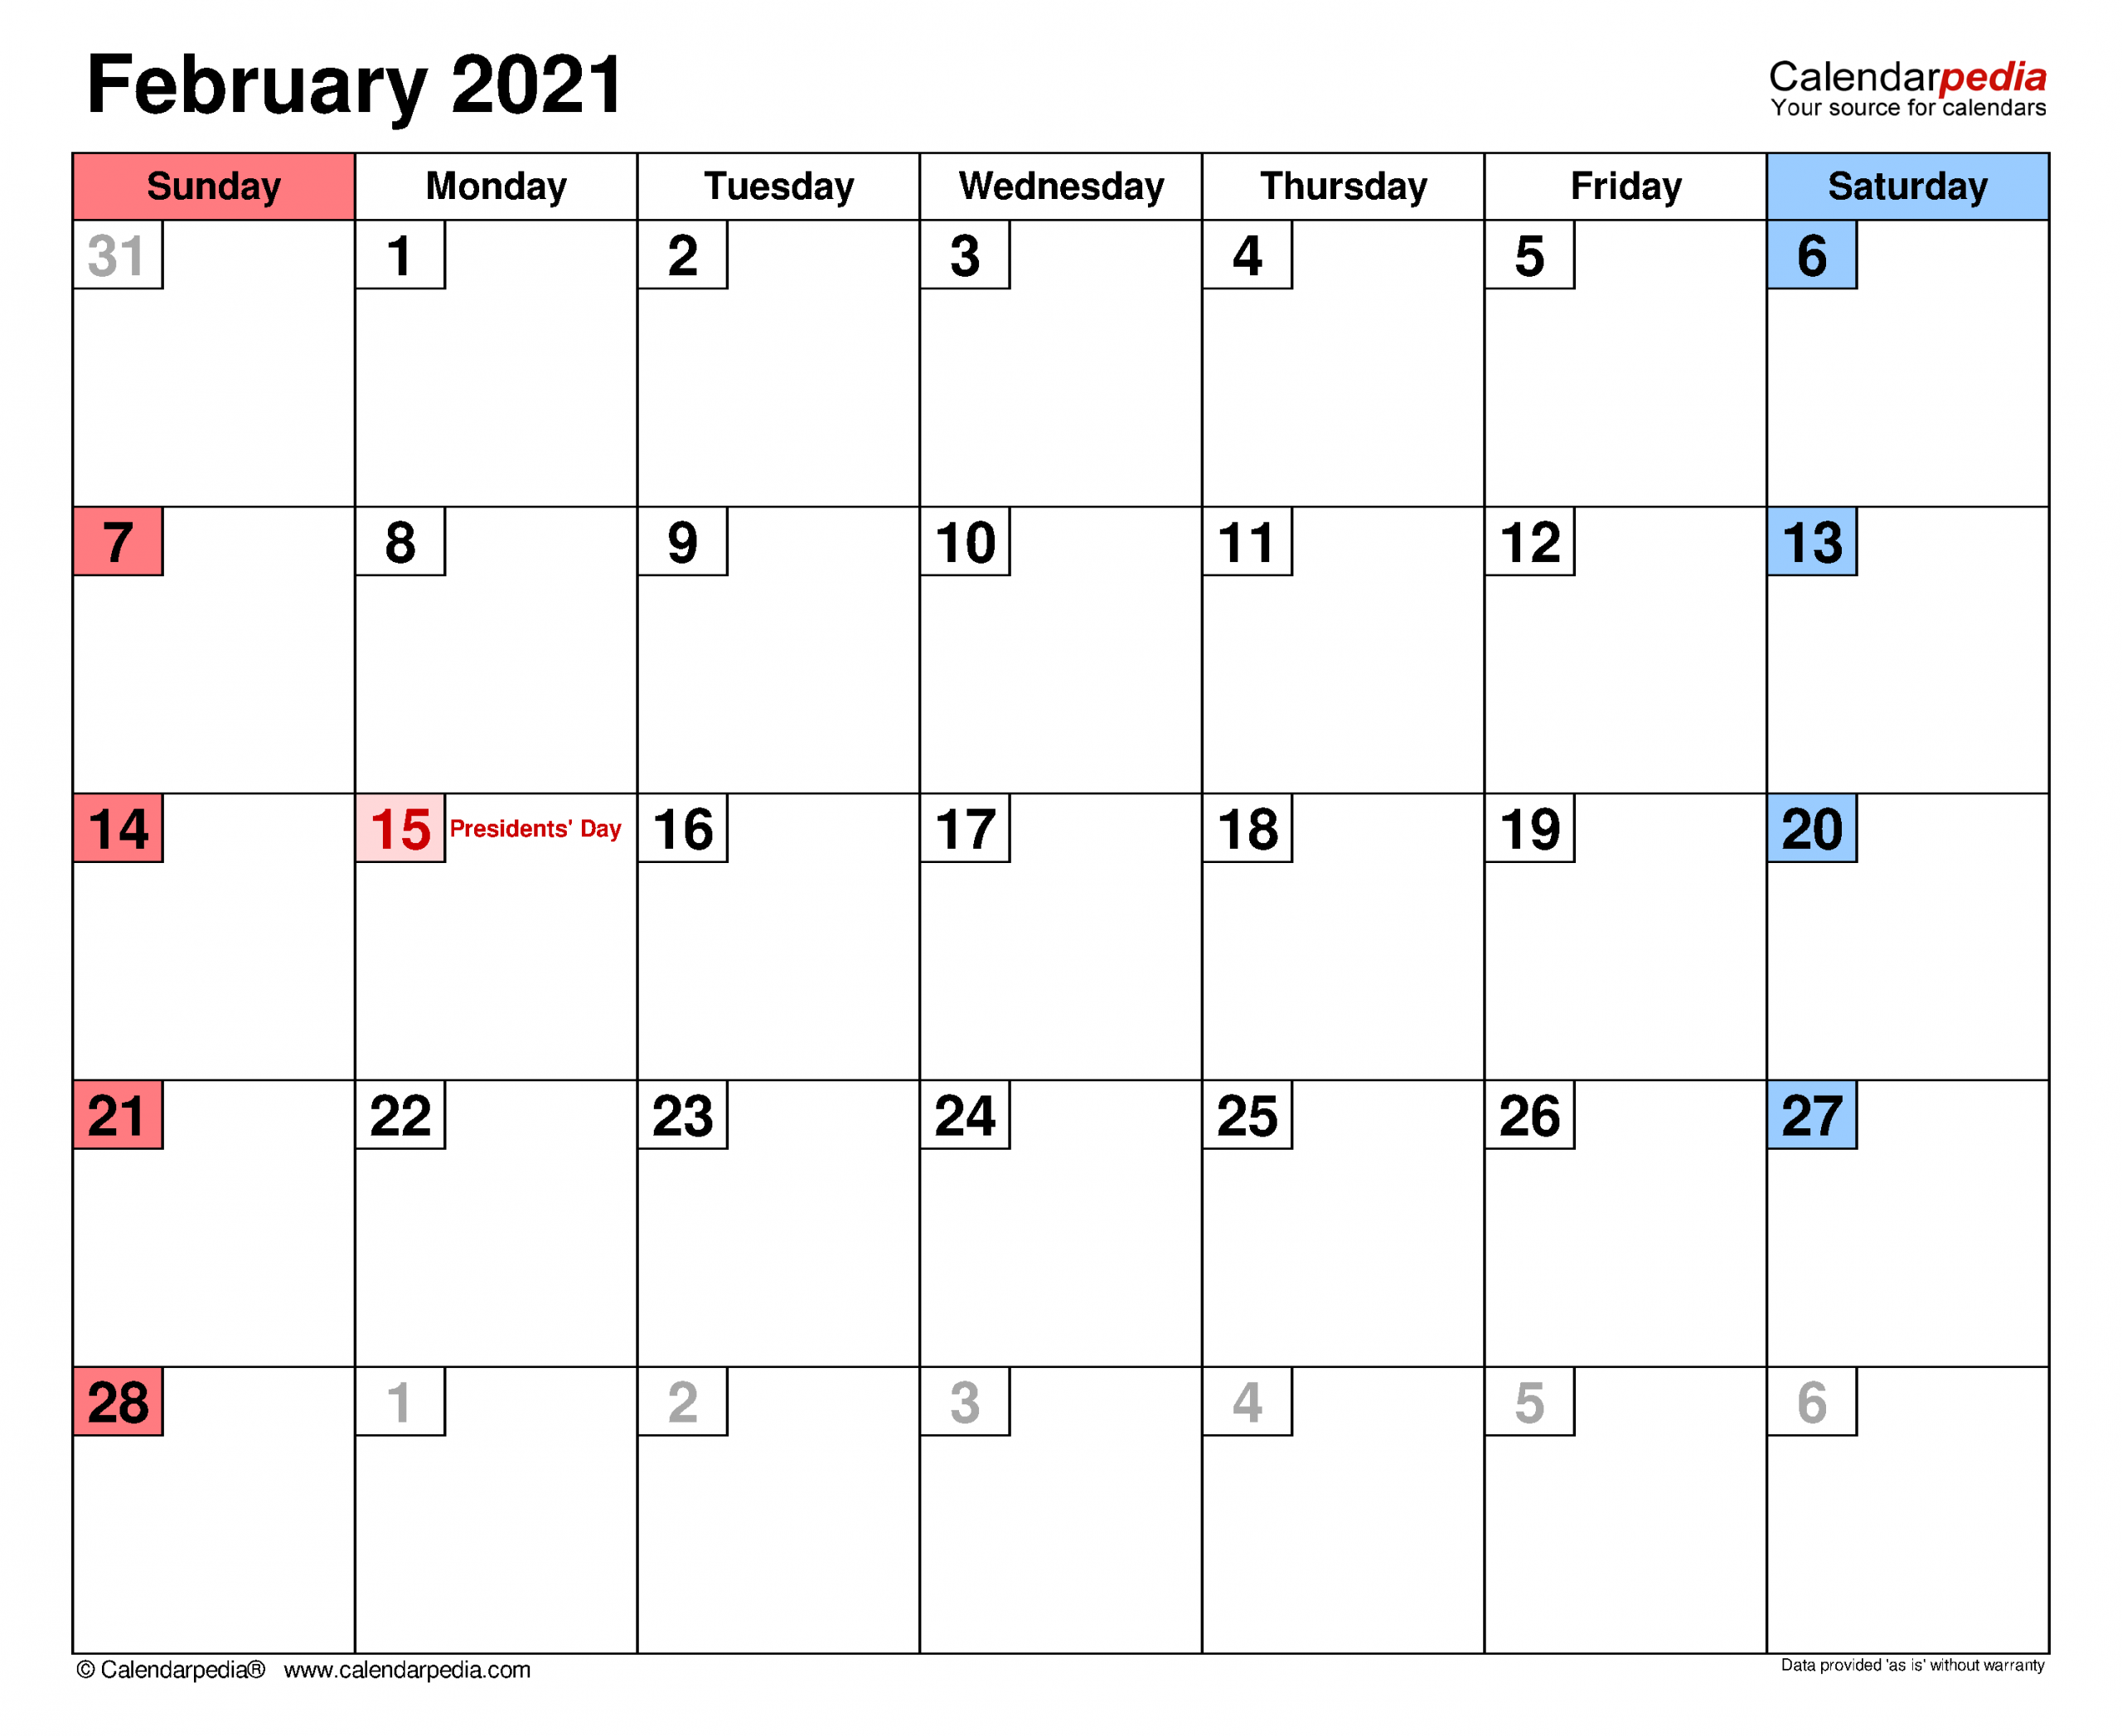 February 2021 Calendar For Kids | Calendar 2021 November 2020 Through February 2021 Calendar